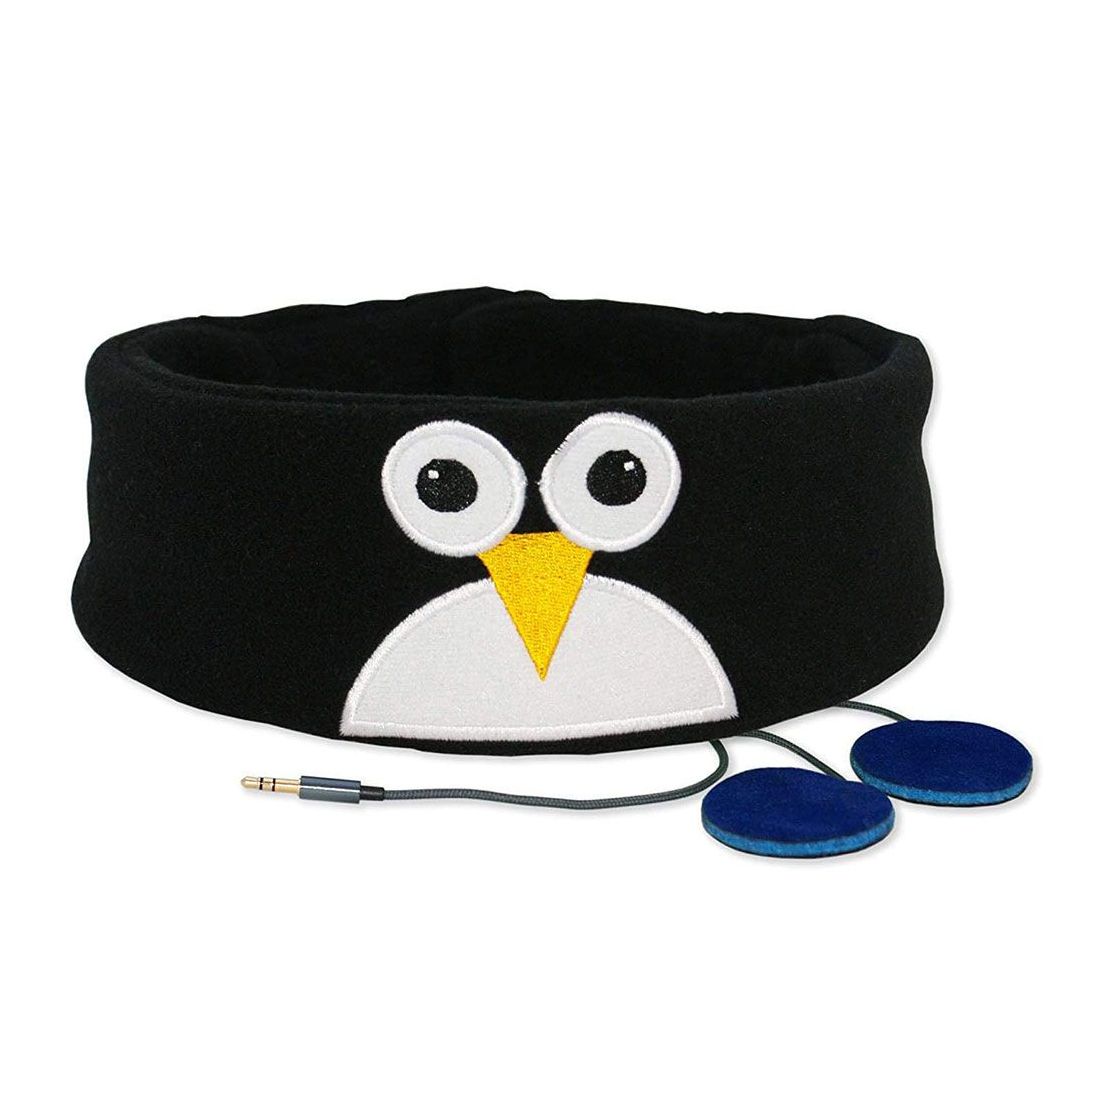 Snuggly Rascals Penguin V2 Headphones for Kids